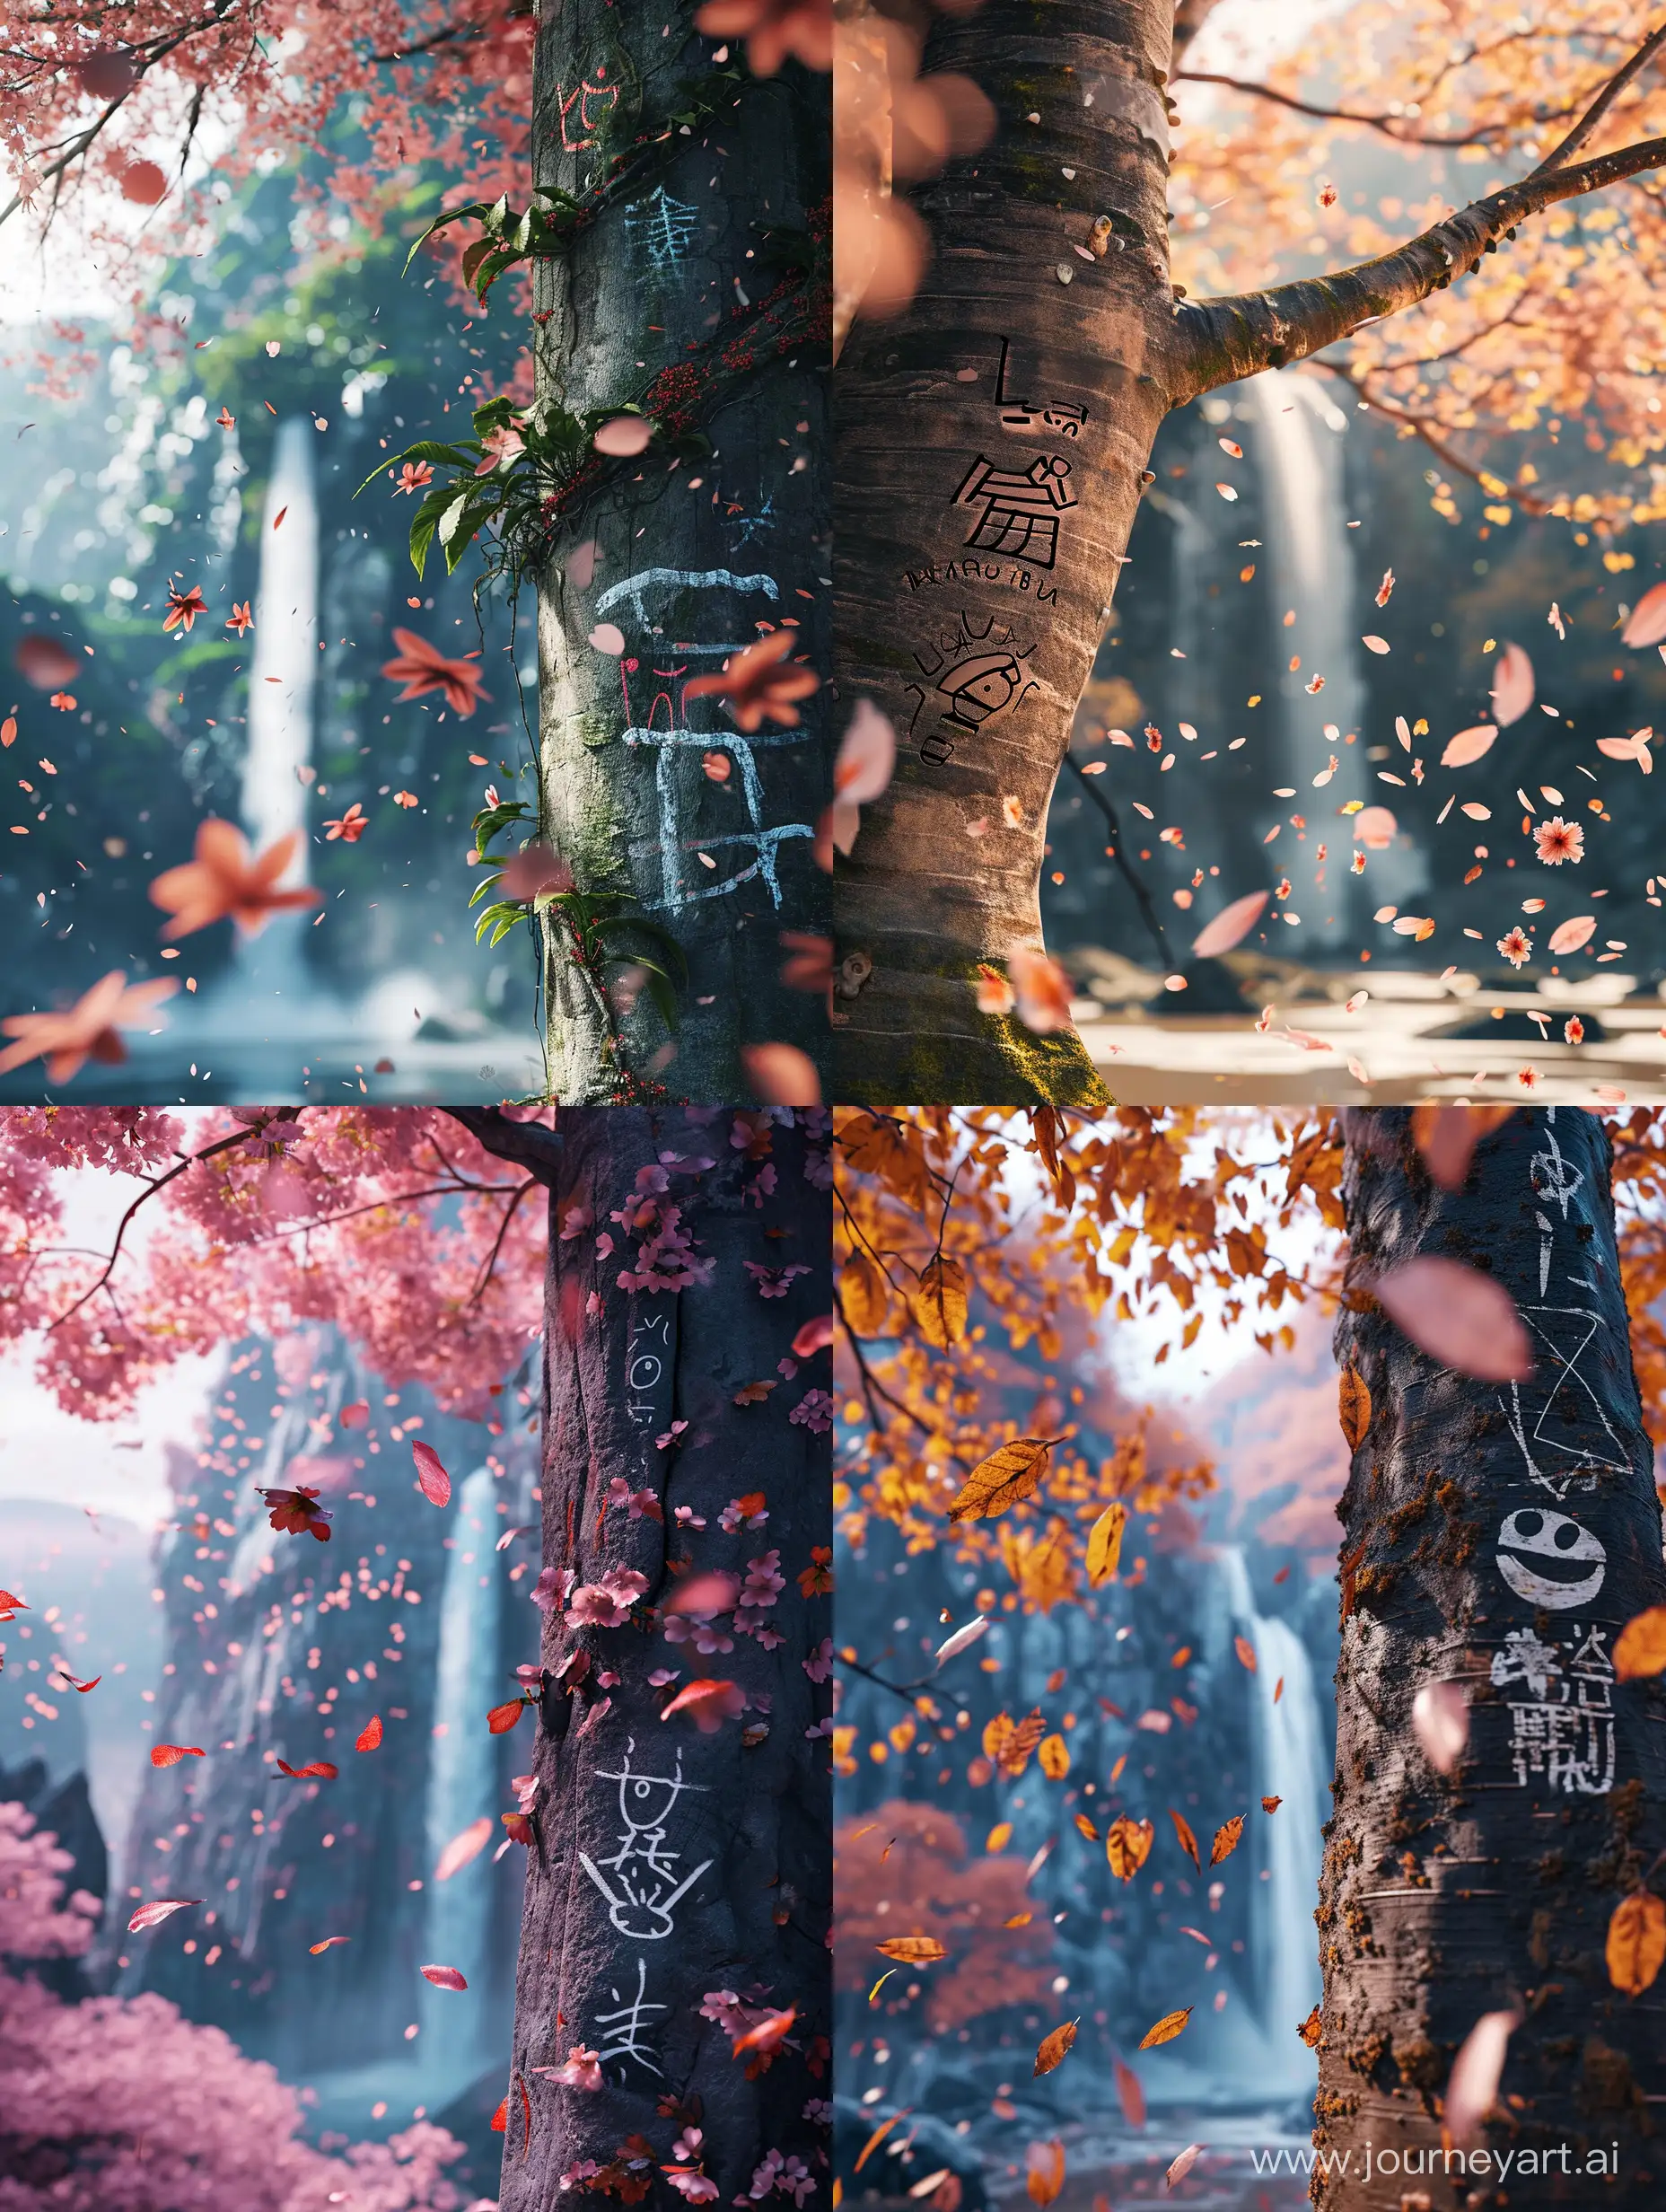 Sakura-Tree-with-Cinematic-Emoji-Art-and-Waterfall